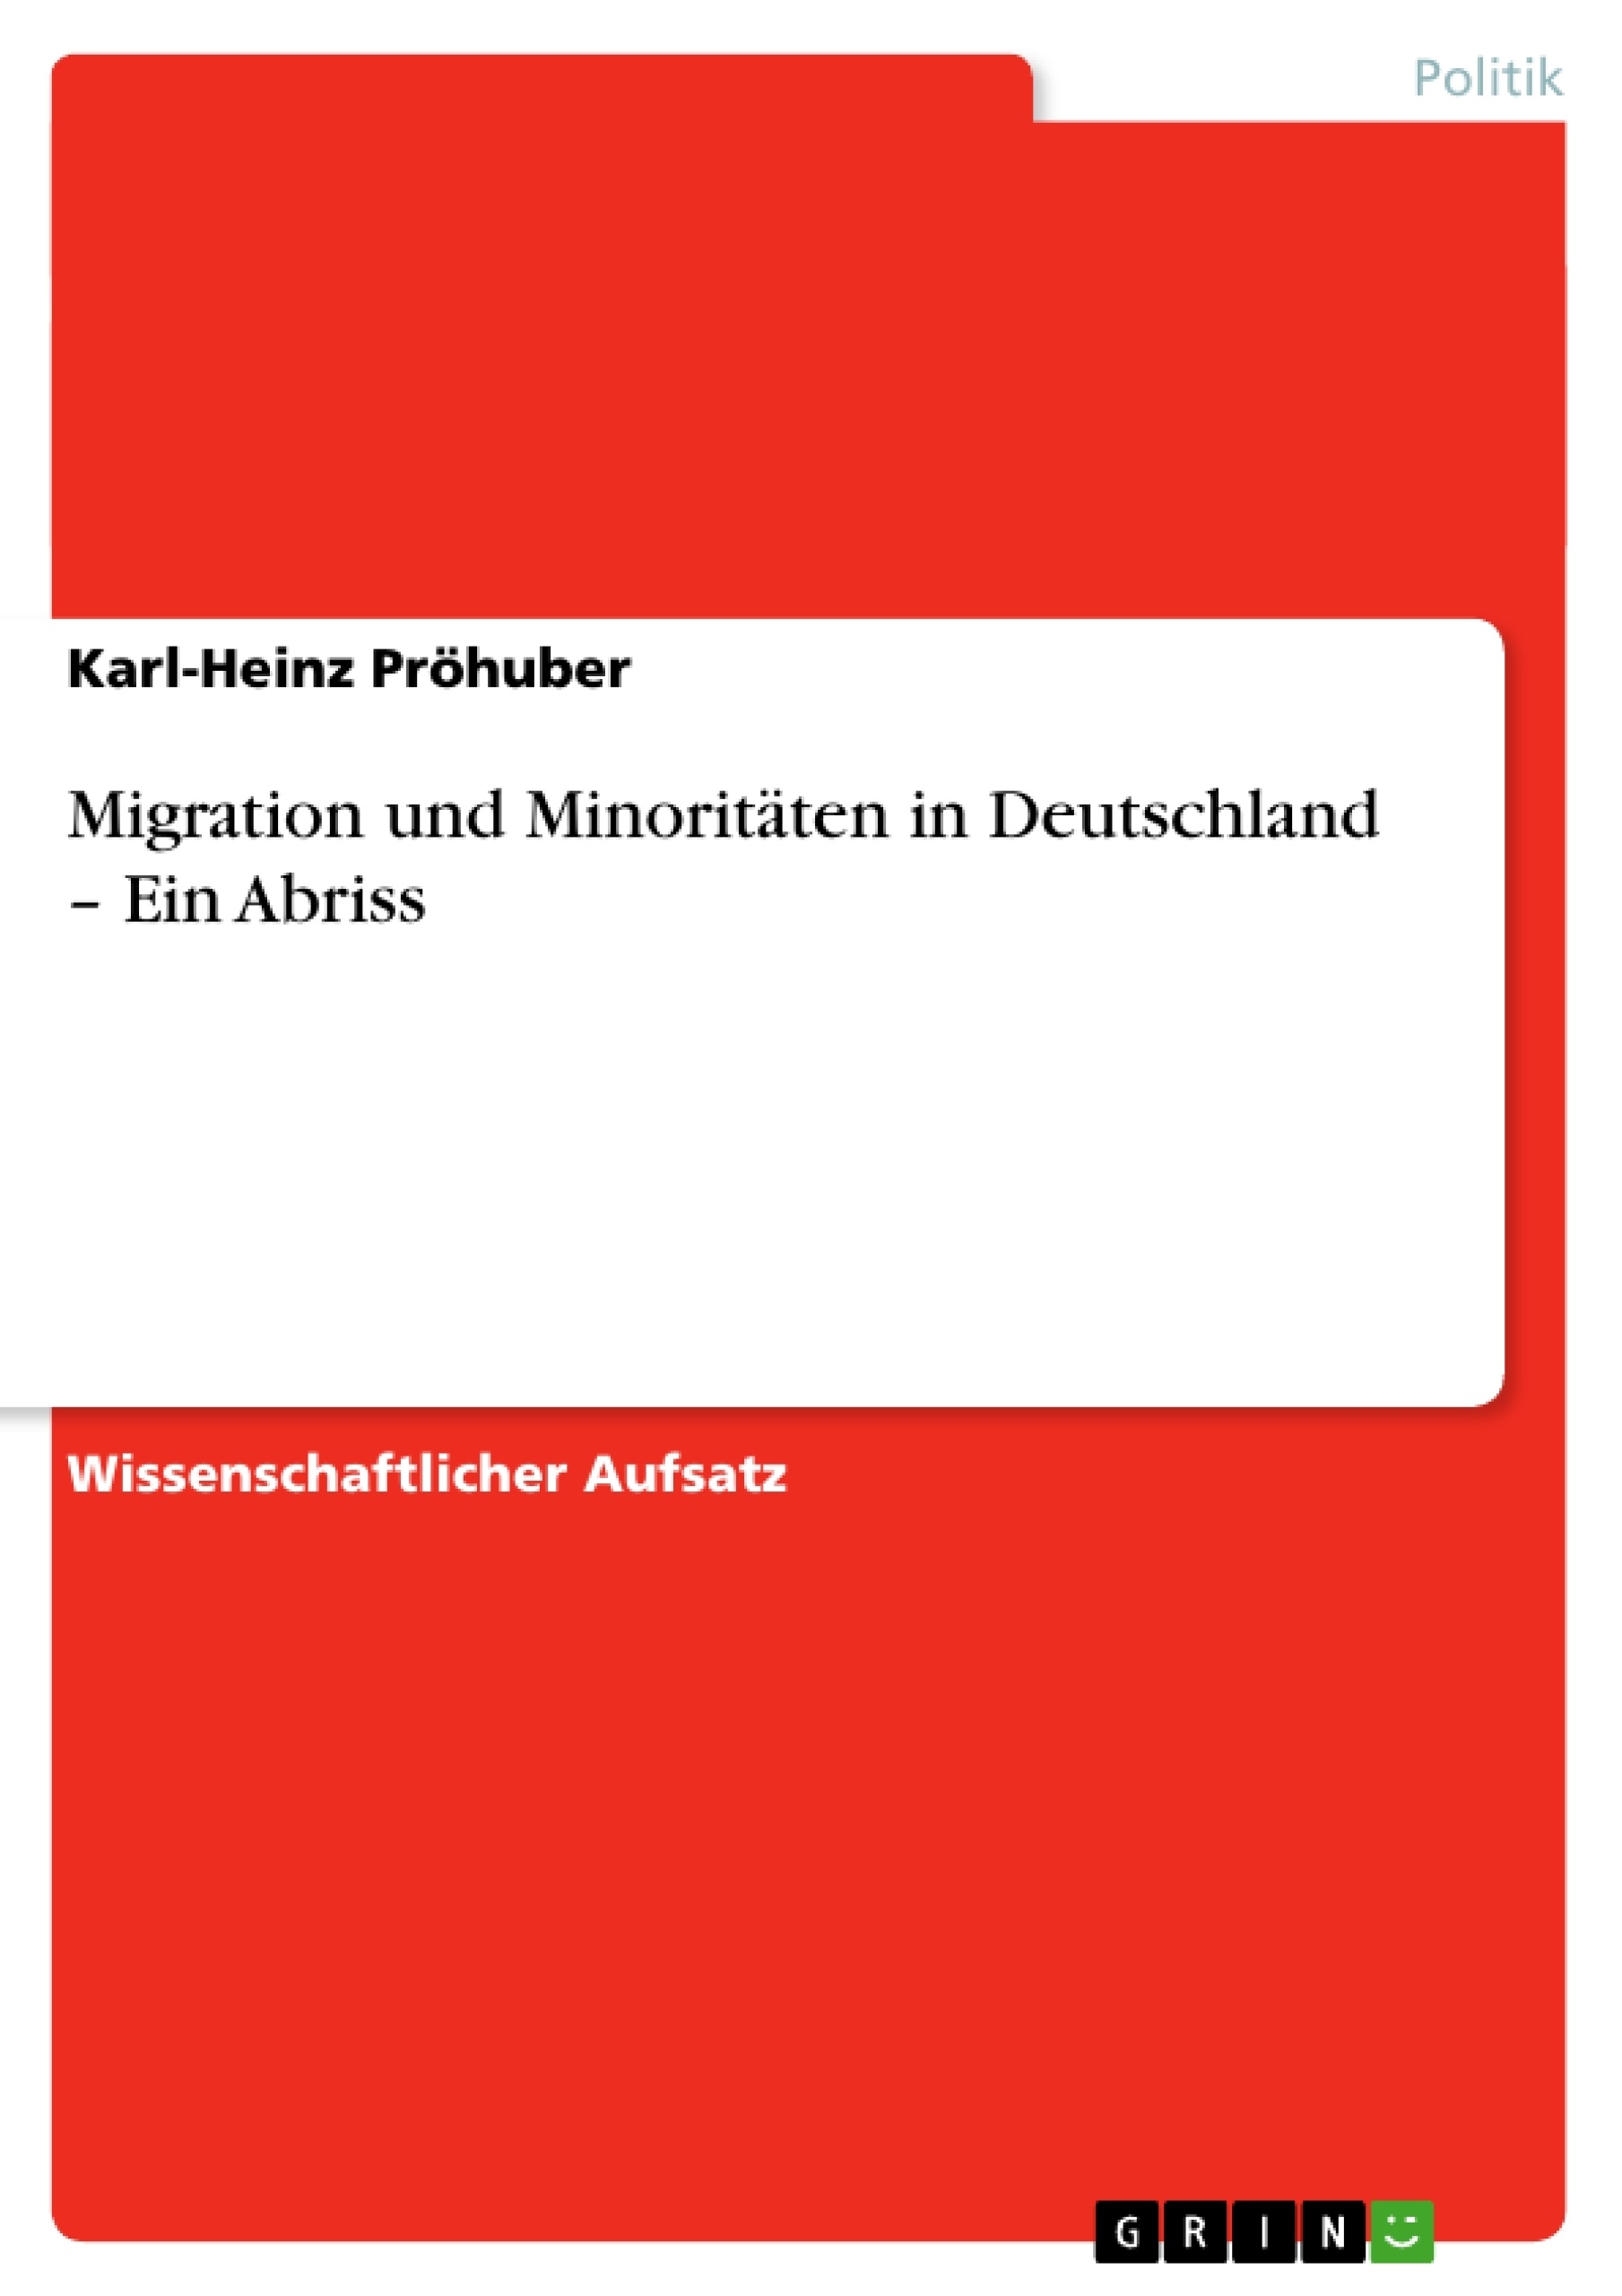 Title: Migration und Minoritäten in Deutschland – Ein Abriss